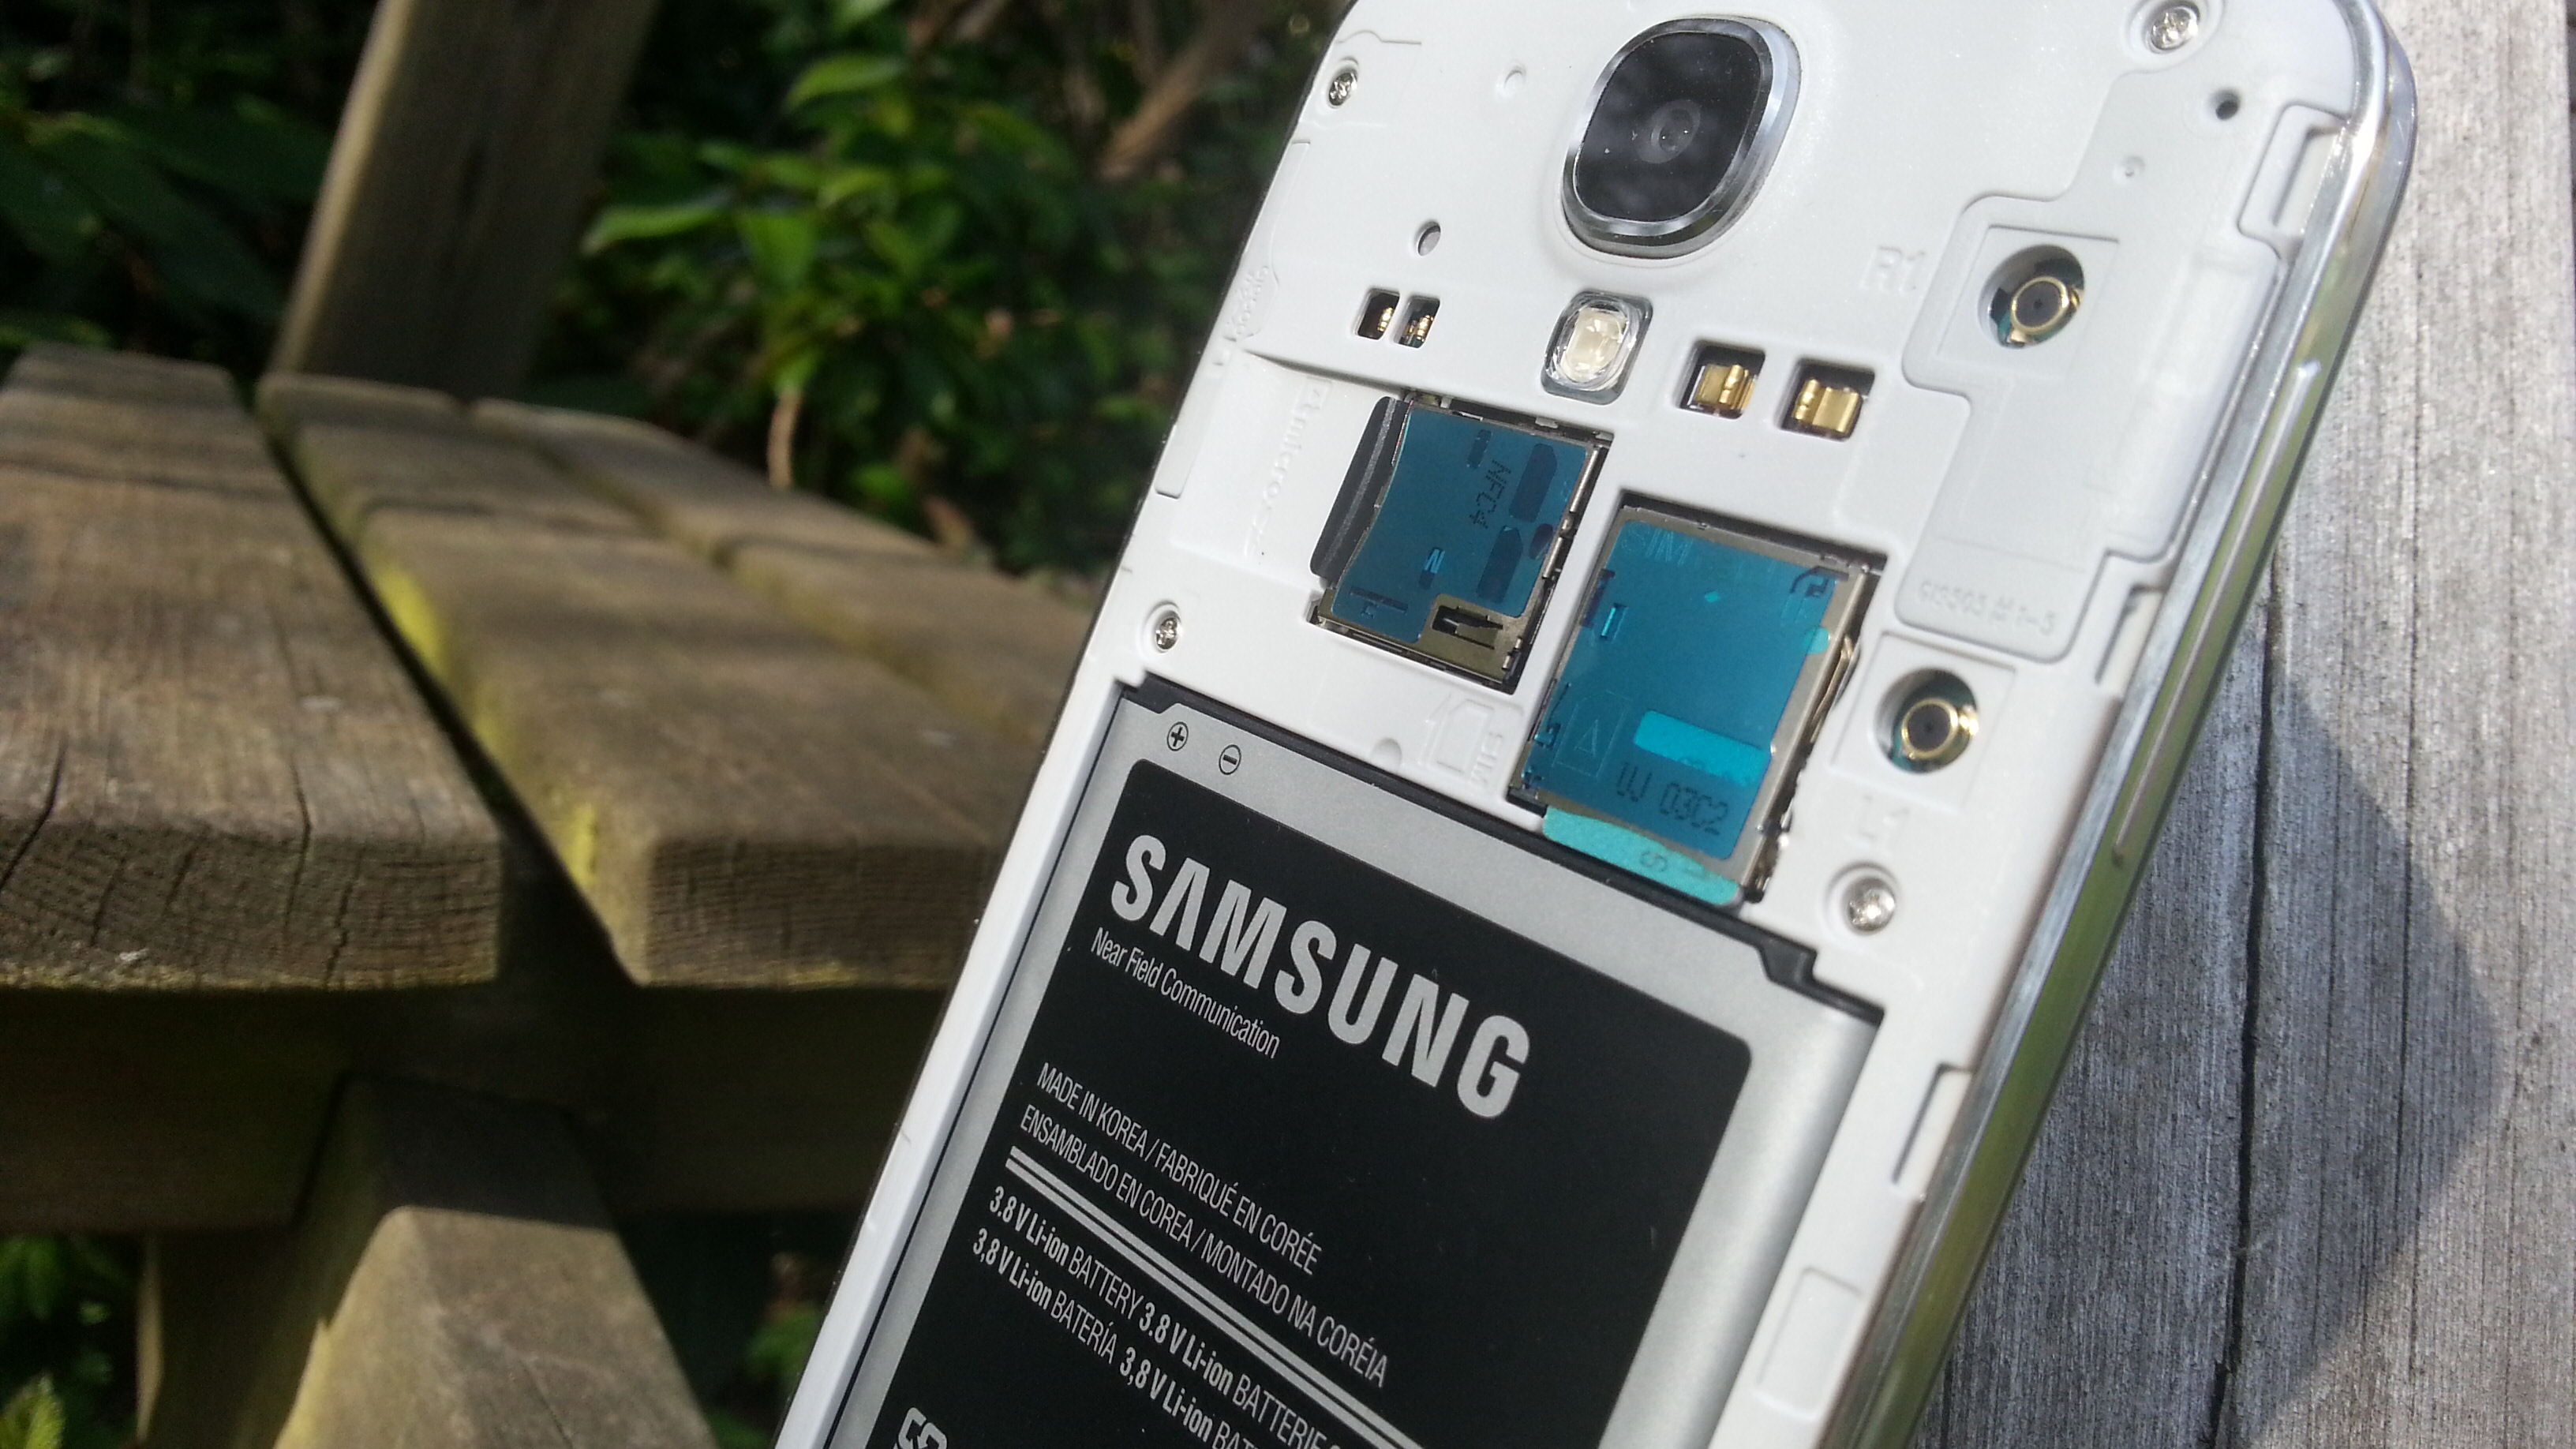 Samsung Galaxy S4 seen as the weakest link in BBC Watchdog |